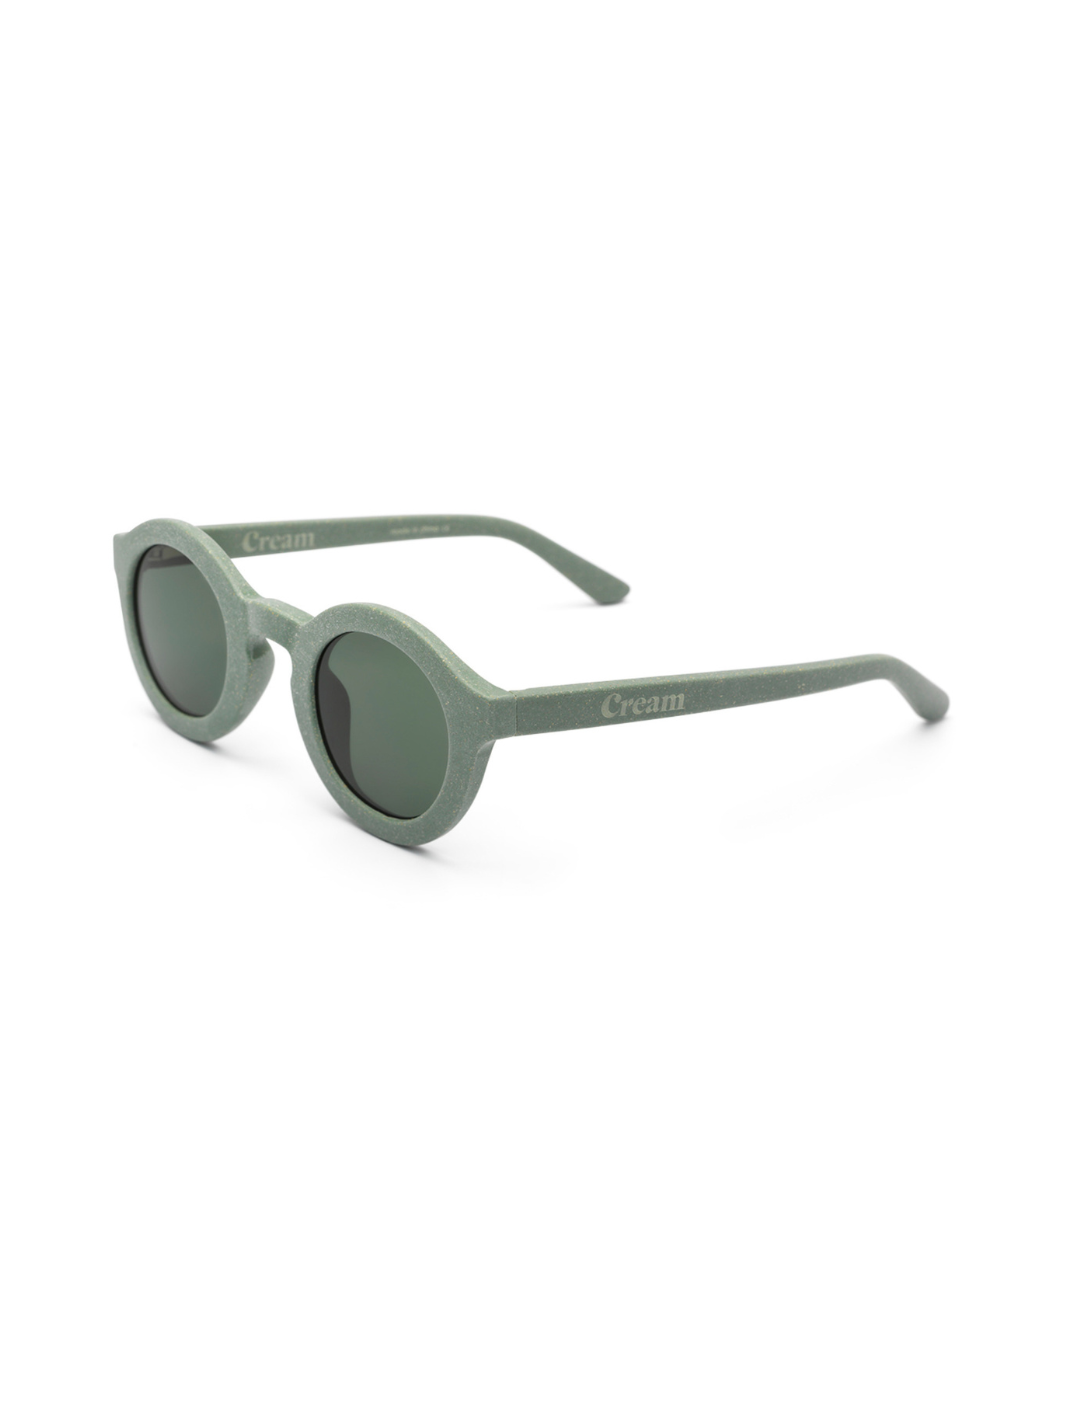 Sonnenbrille mit runden Gläsern - Olive